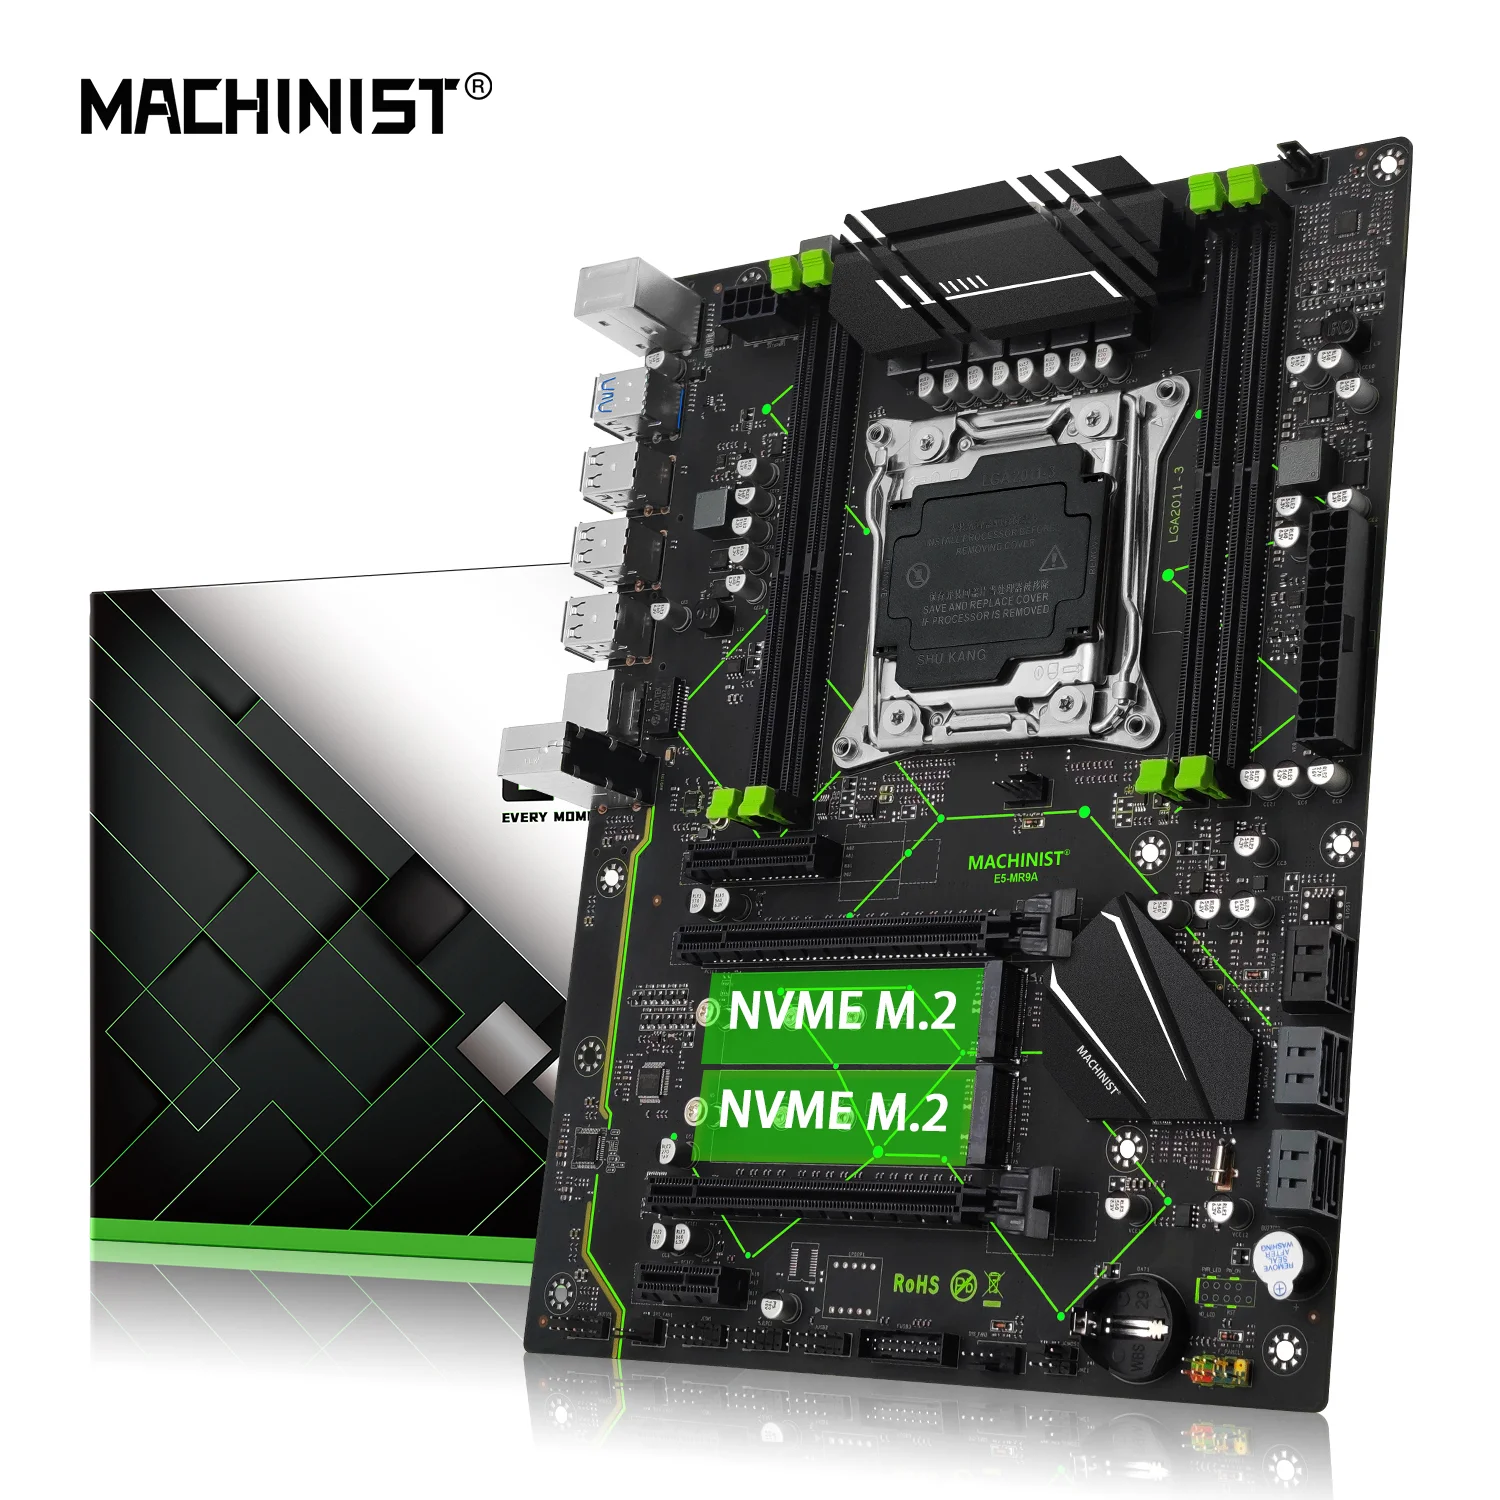   MACHINIST E5 MR9A LGA 2011-3,   Xeon E5 V3 V4  DDR4 ECC RAM ATX Dual NVME M.2,  